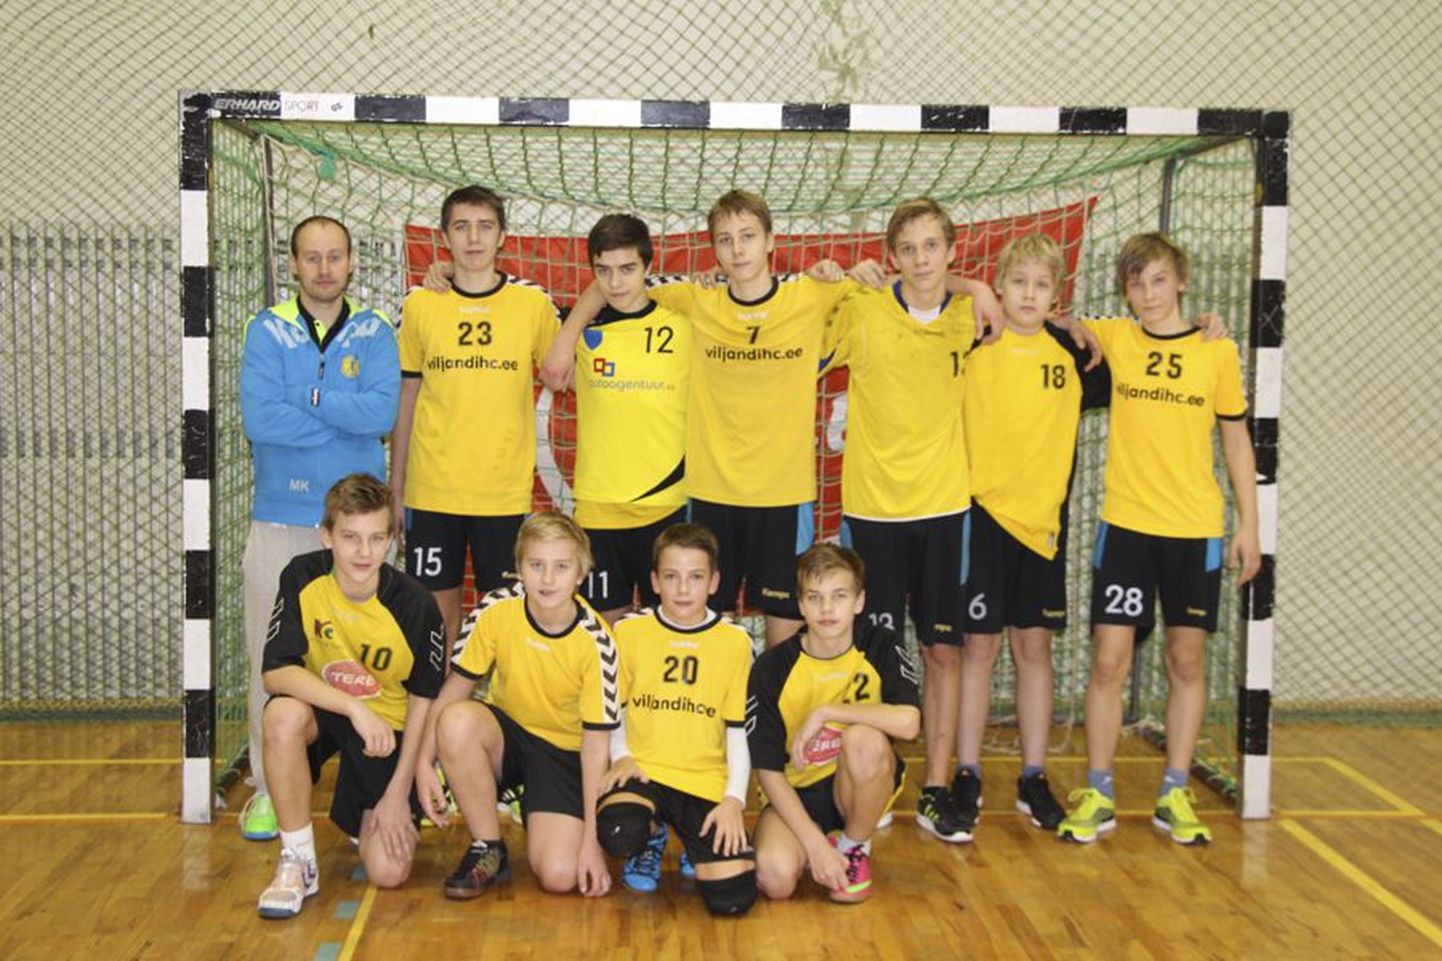 Viljandi Spordikooli C-klassi meeskond saavutas Eesti karikavõistlustel kolmanda koha.